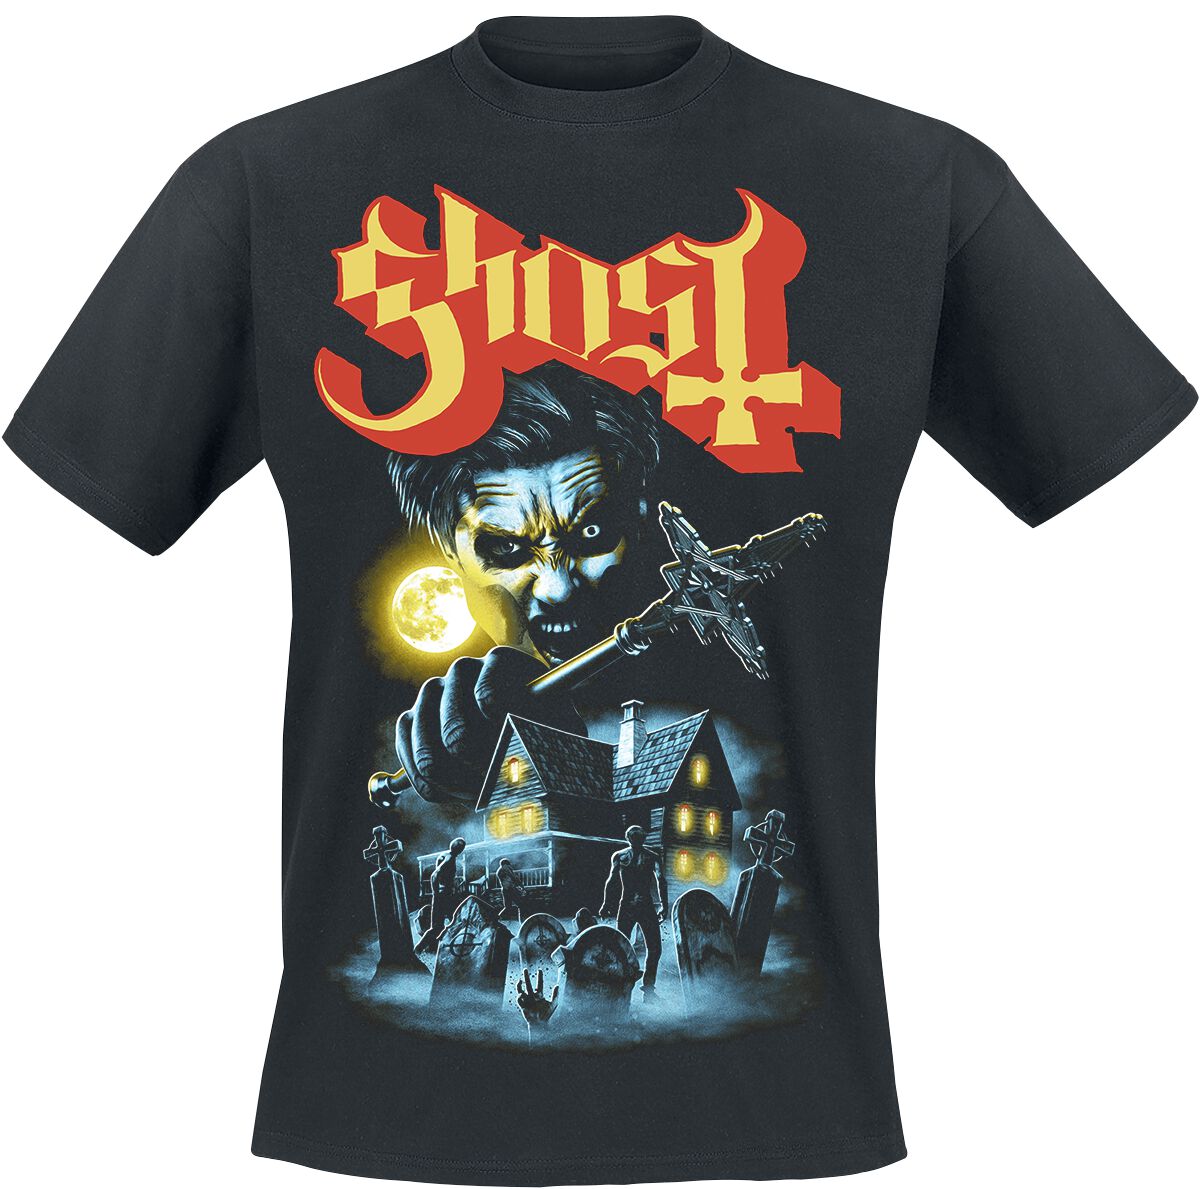 Ghost T-Shirt - By The Cemetery - S bis 4XL - für Männer - Größe 3XL - schwarz  - Lizenziertes Merchandise!